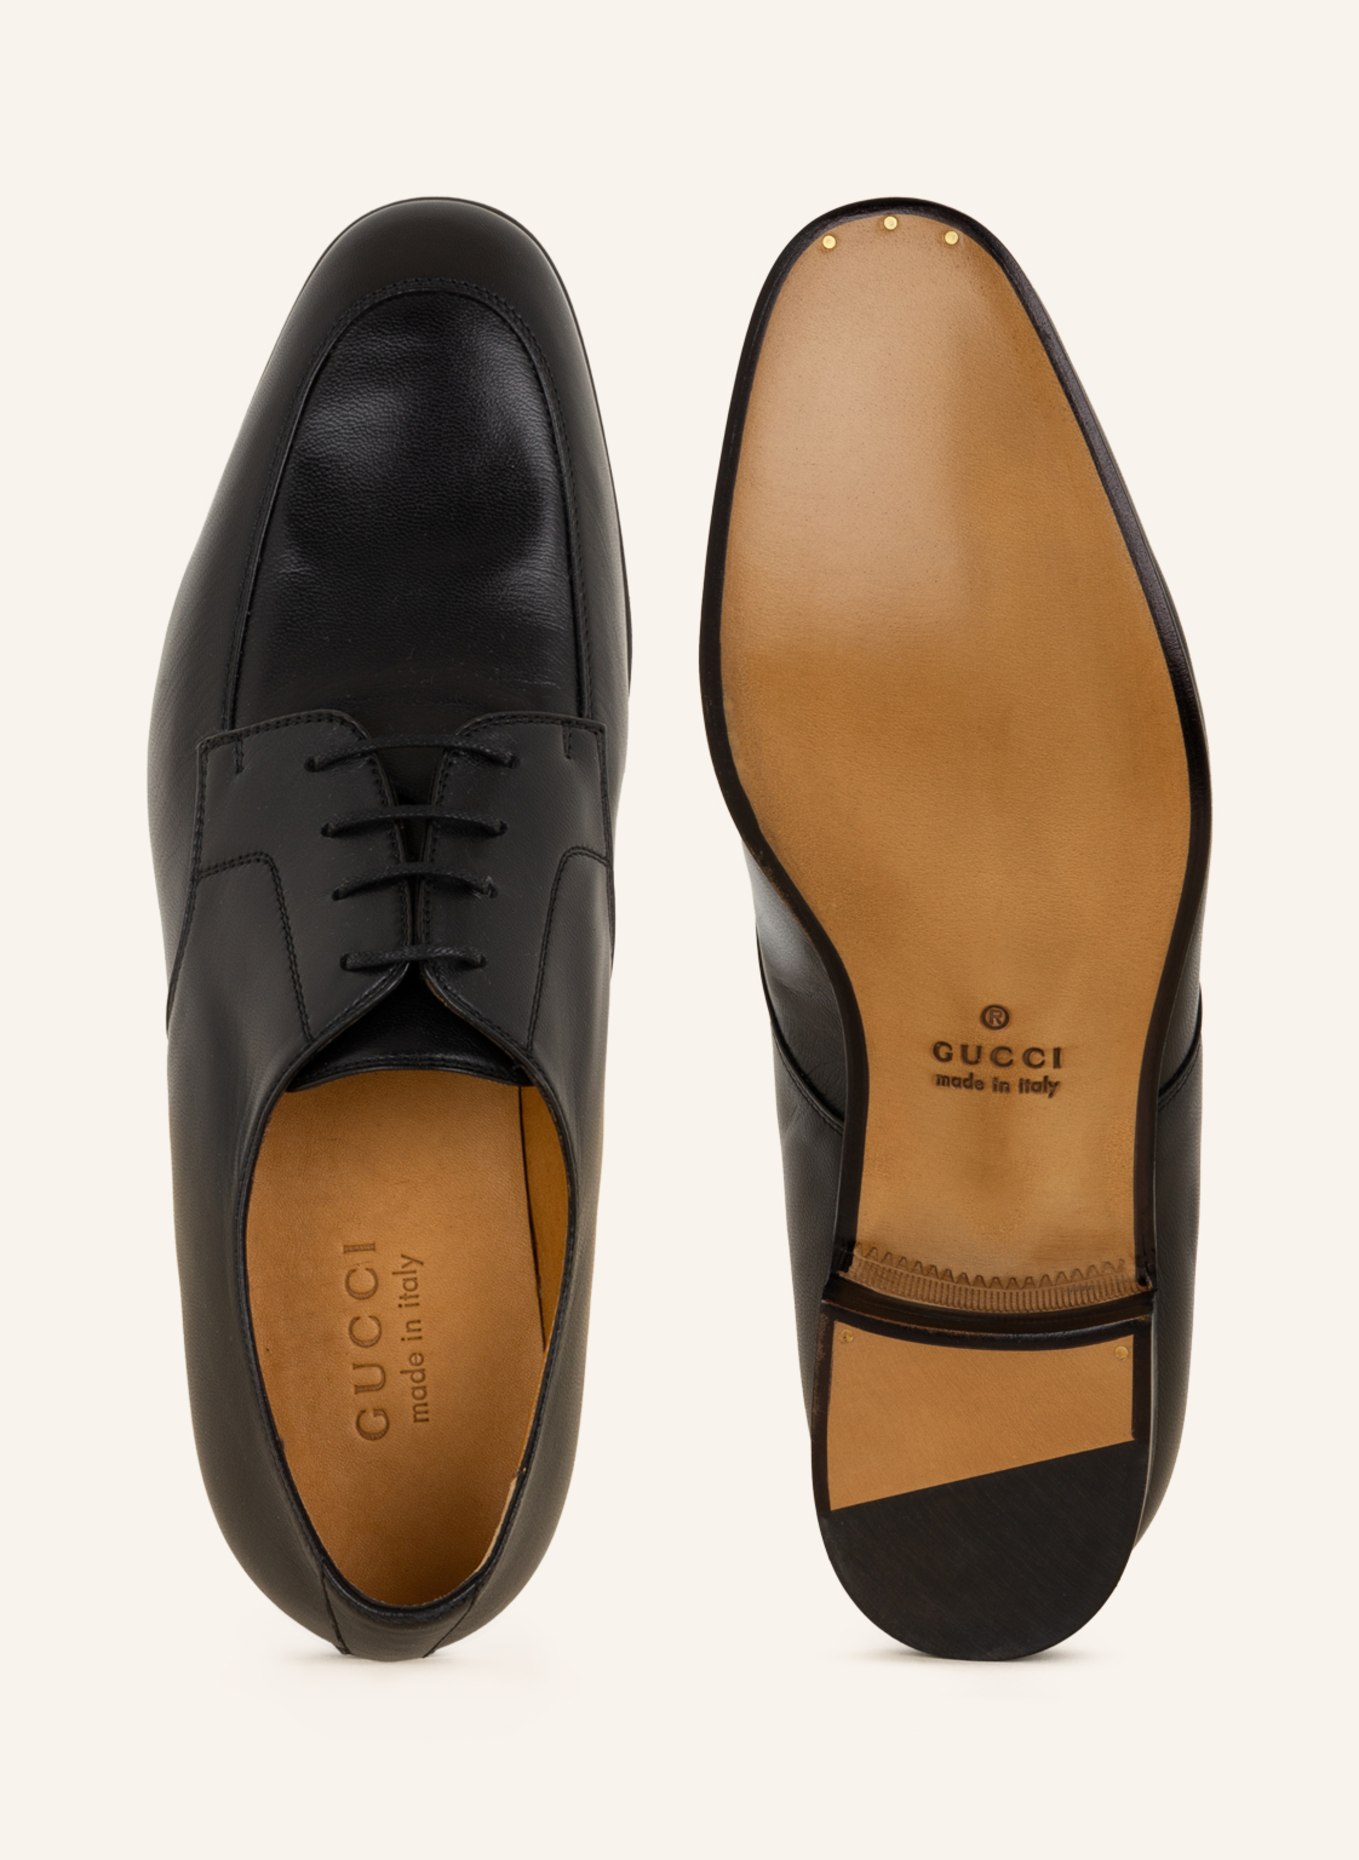 GUCCI Lace-up shoes, Color: BLACK (Image 5)